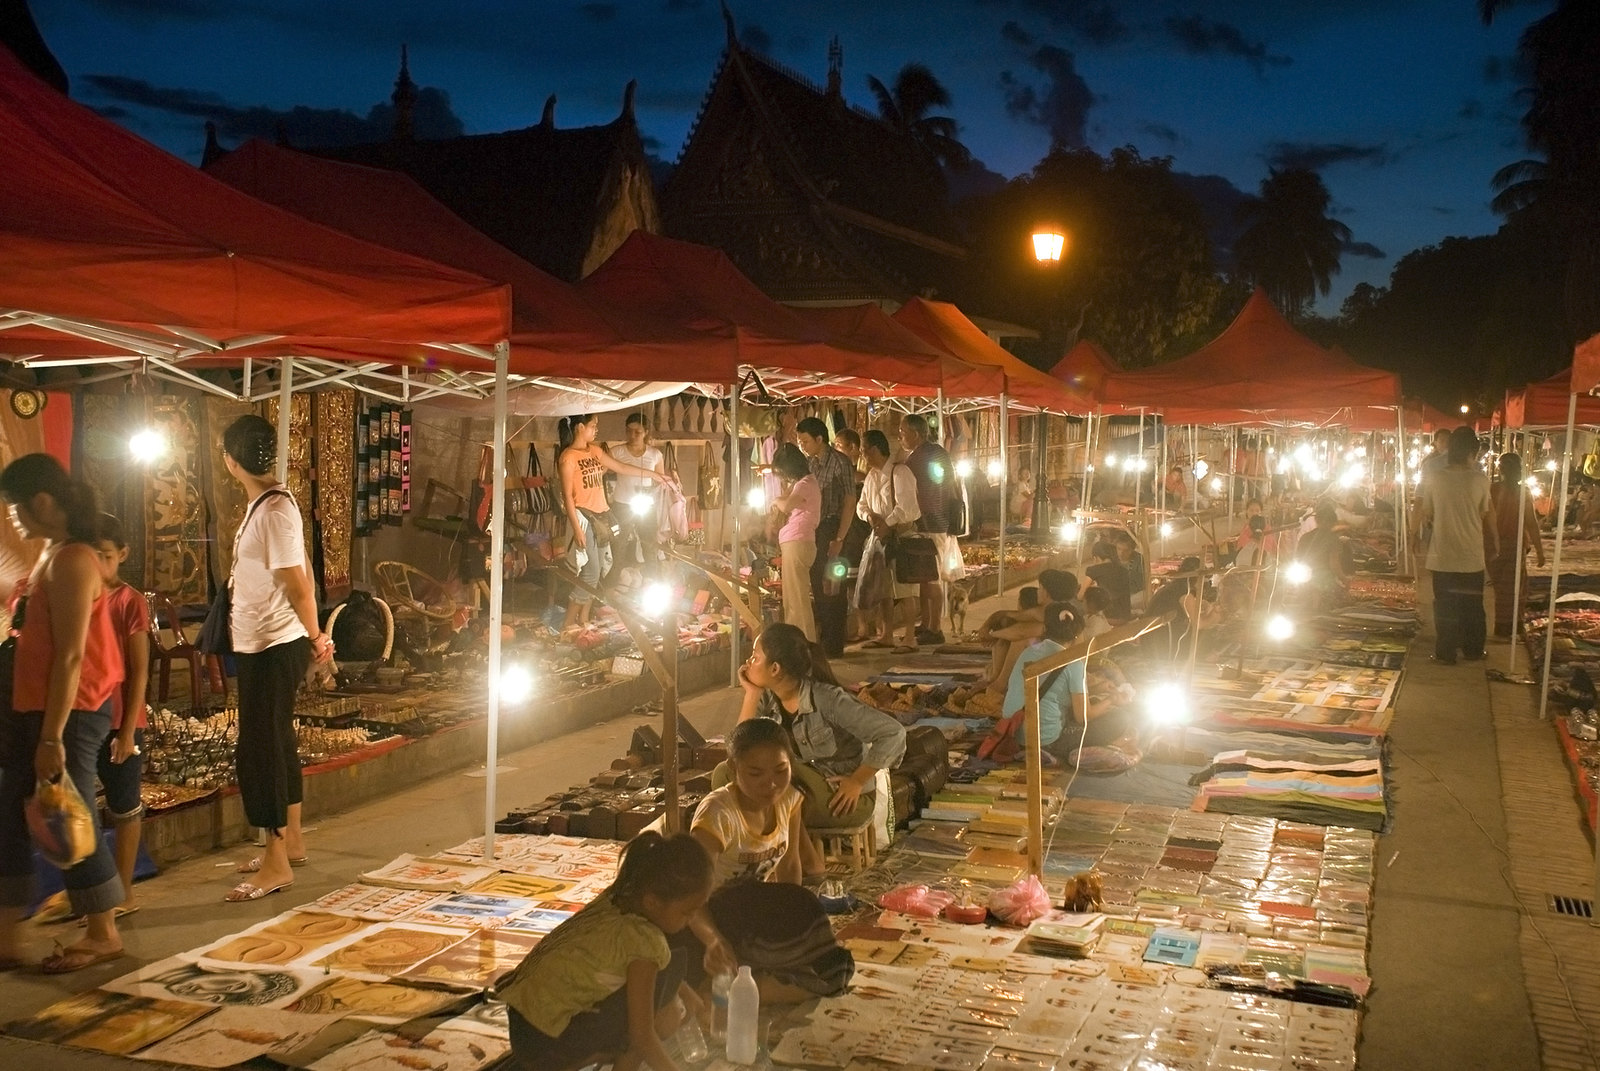 Luang Prabang's Night Market